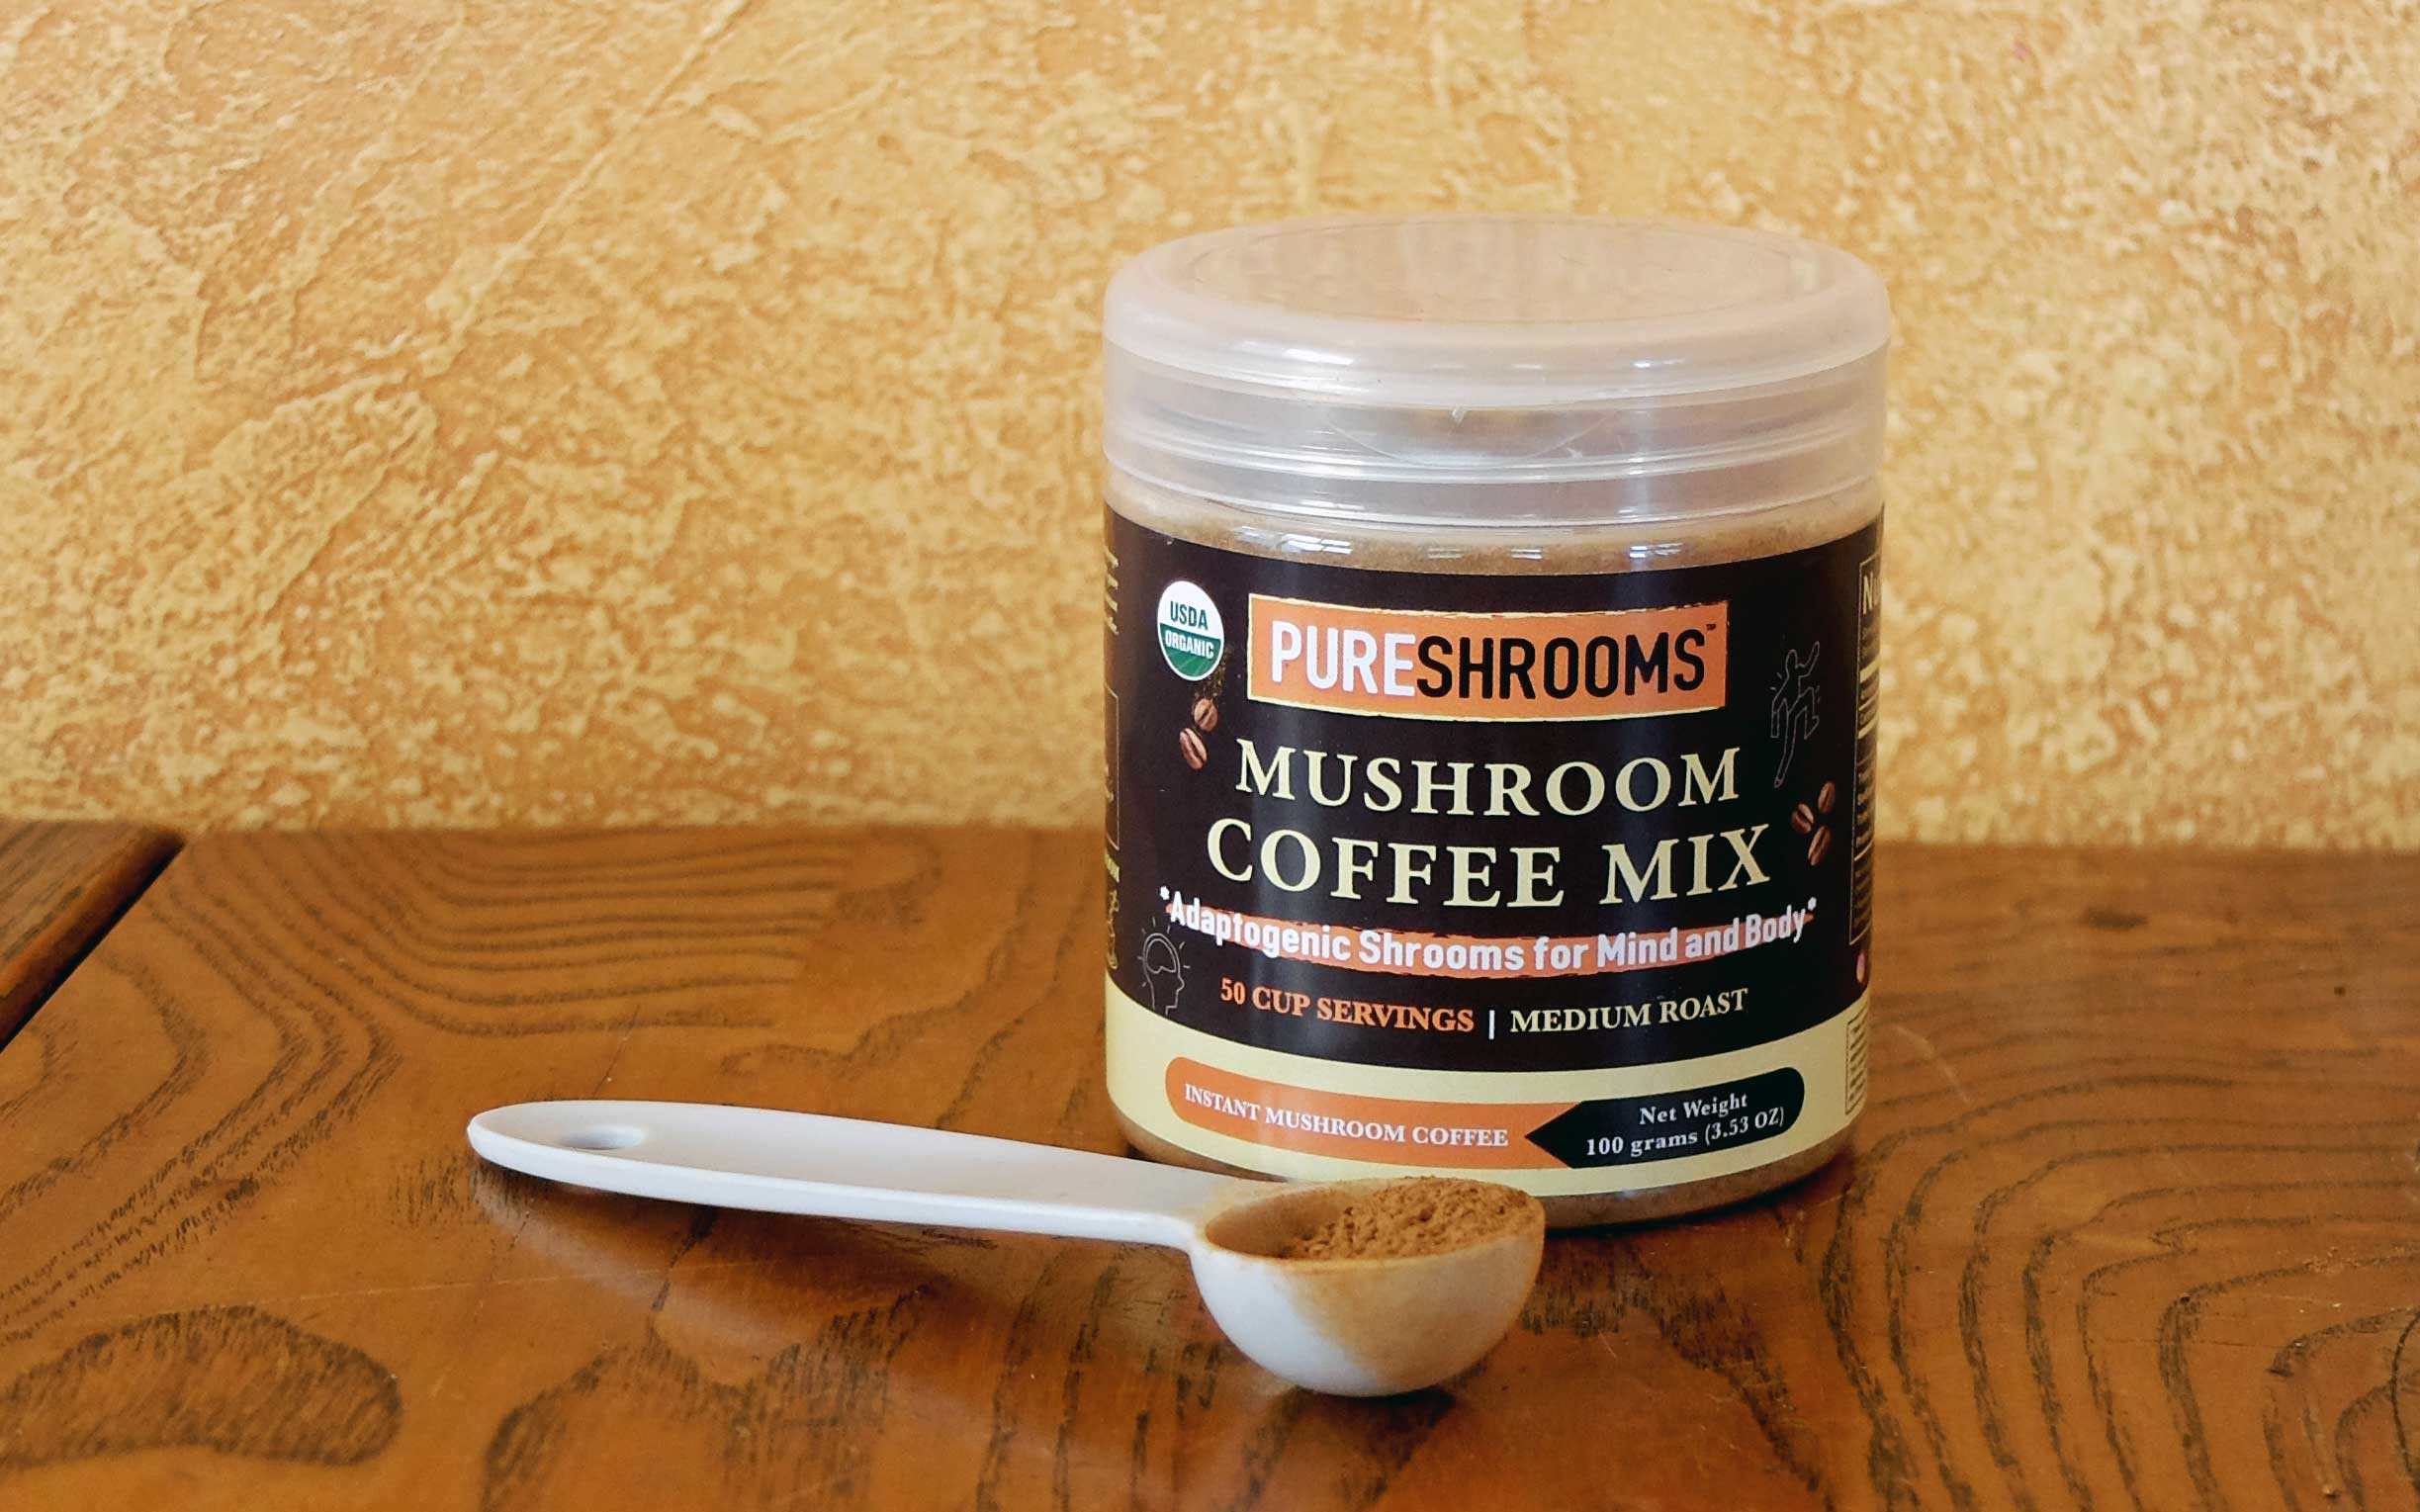 Mushroom coffee